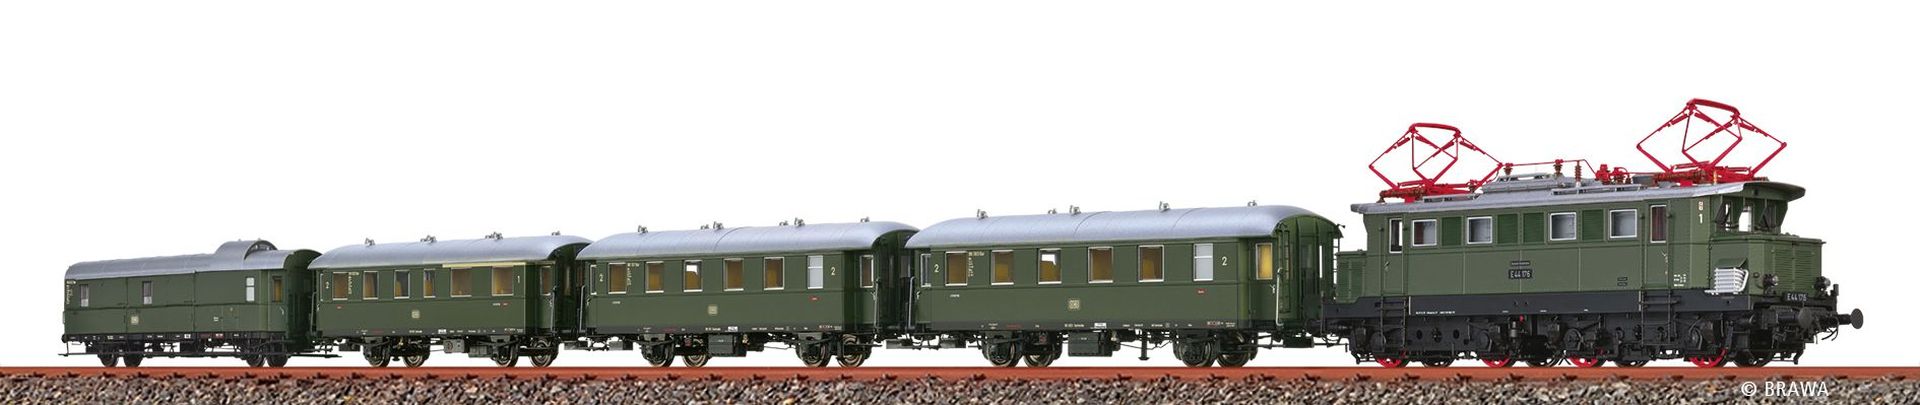 Brawa 50895 - Zugset Höllentalbahn mit E44 und Personenwagen, DB, Ep.III, DC-Sound-Extra